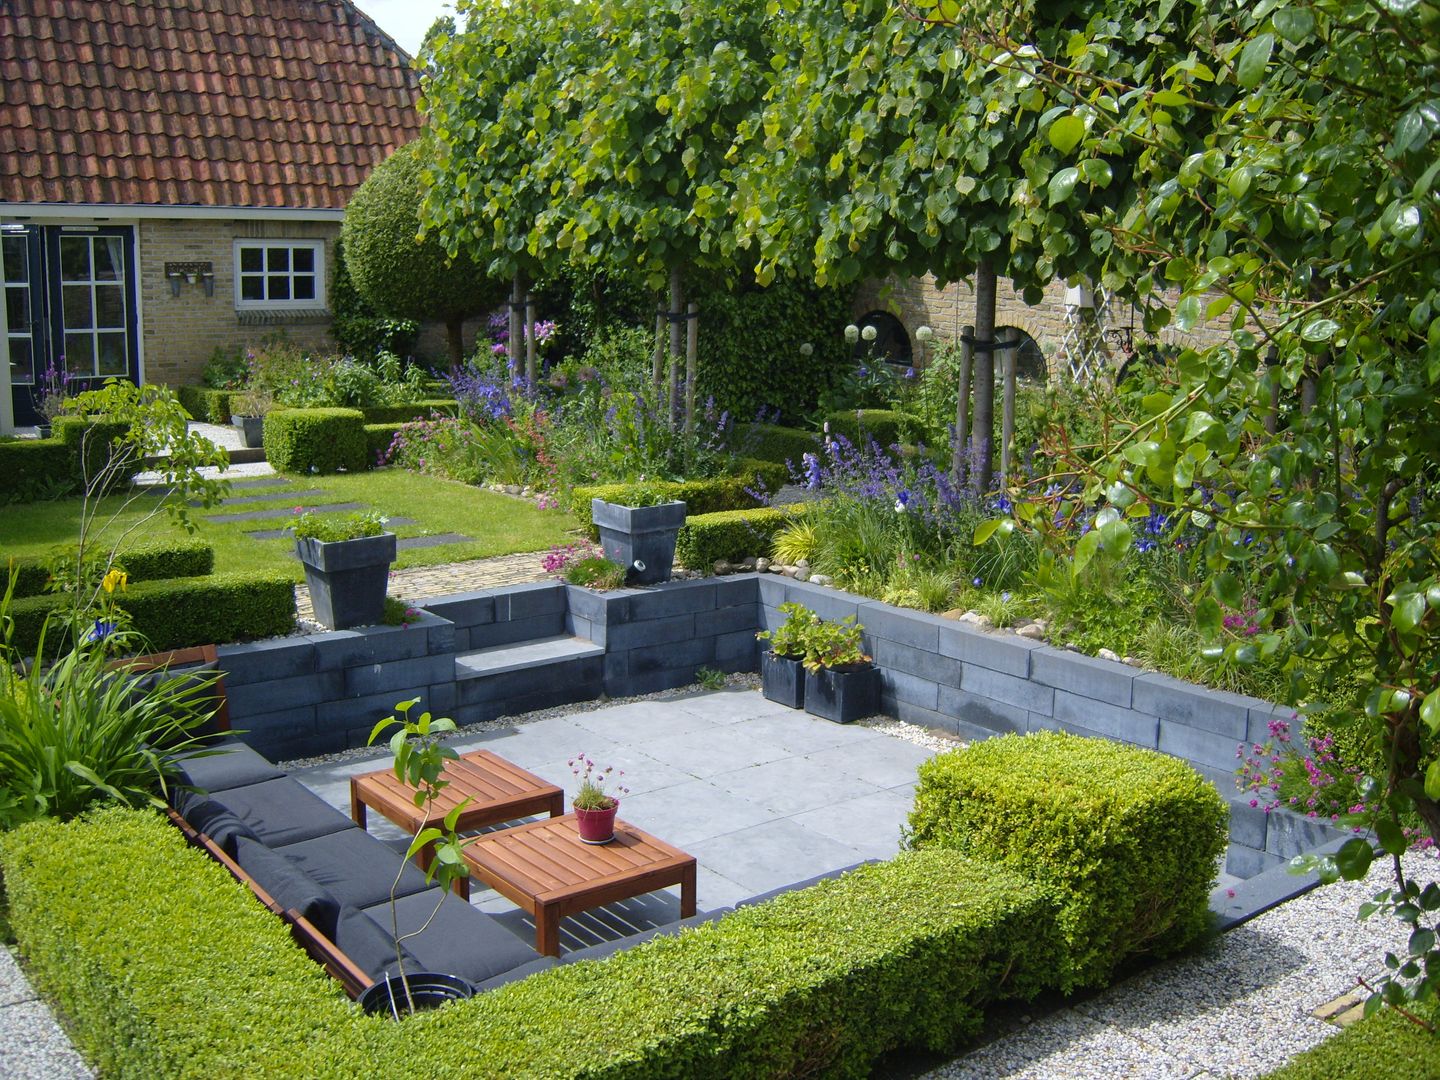 Moderne zitkuil in eigen tuin van tuinontwerper Joke Gerritsma, Joke Gerritsma Tuinontwerpen Joke Gerritsma Tuinontwerpen Modern Garden Tiles